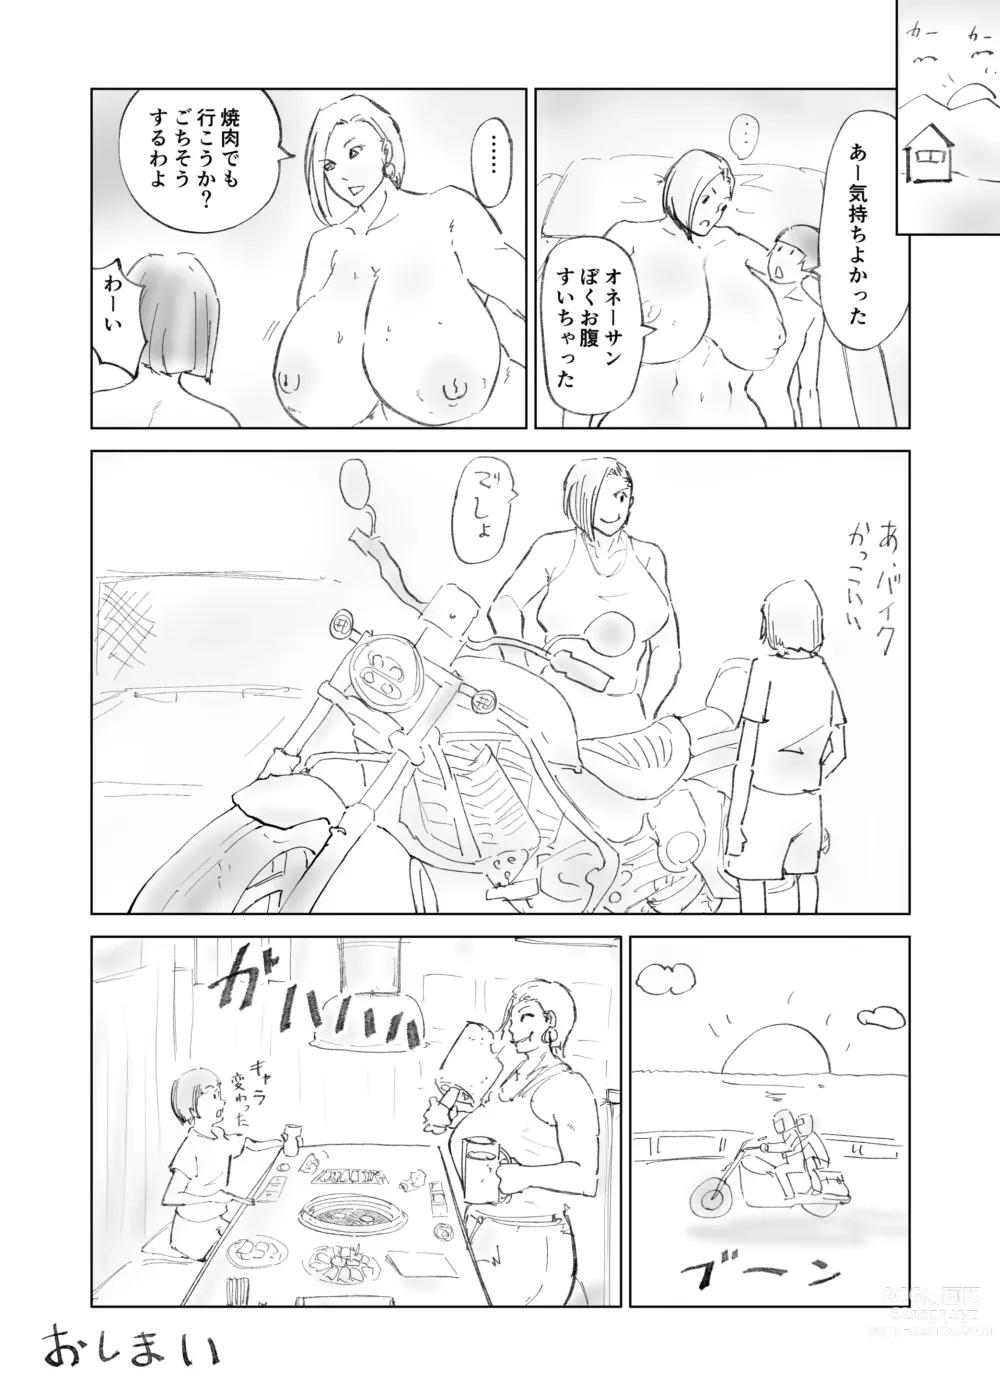 Page 24 of doujinshi Gucho Gucho Beach